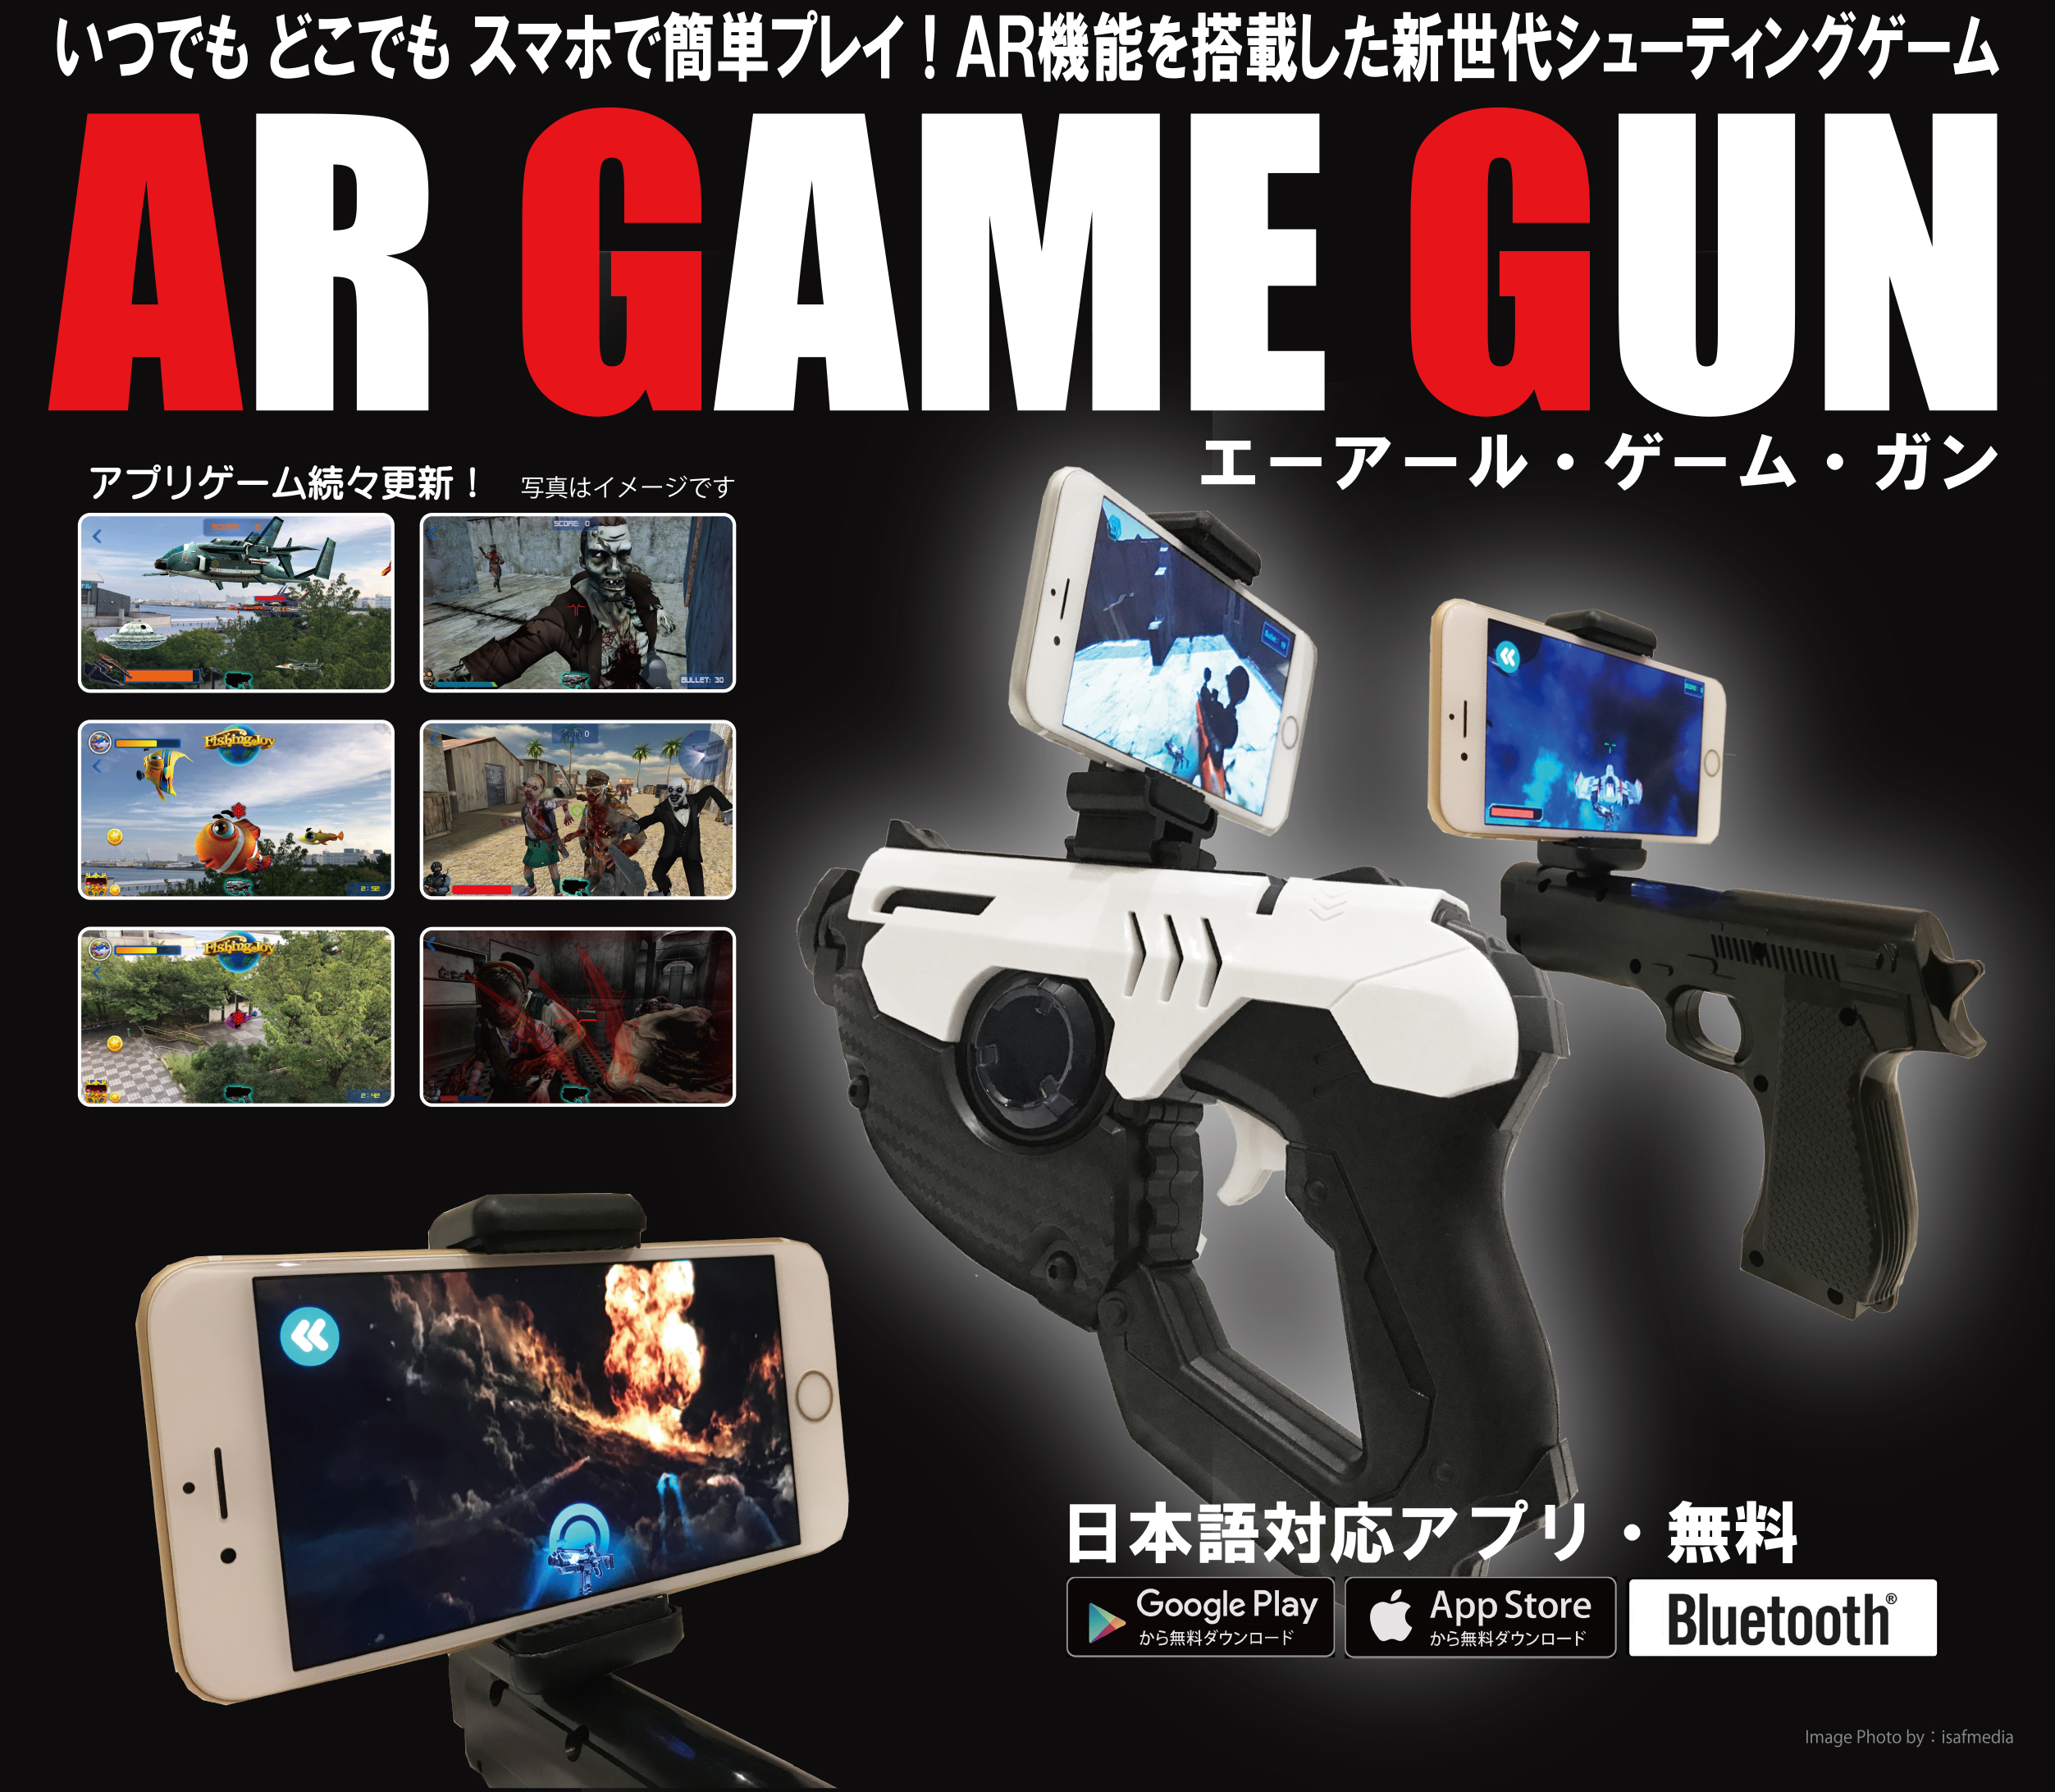 ヒロ・コーポレーション、ARが手軽に楽しめる「AR GAME GUN」を発表